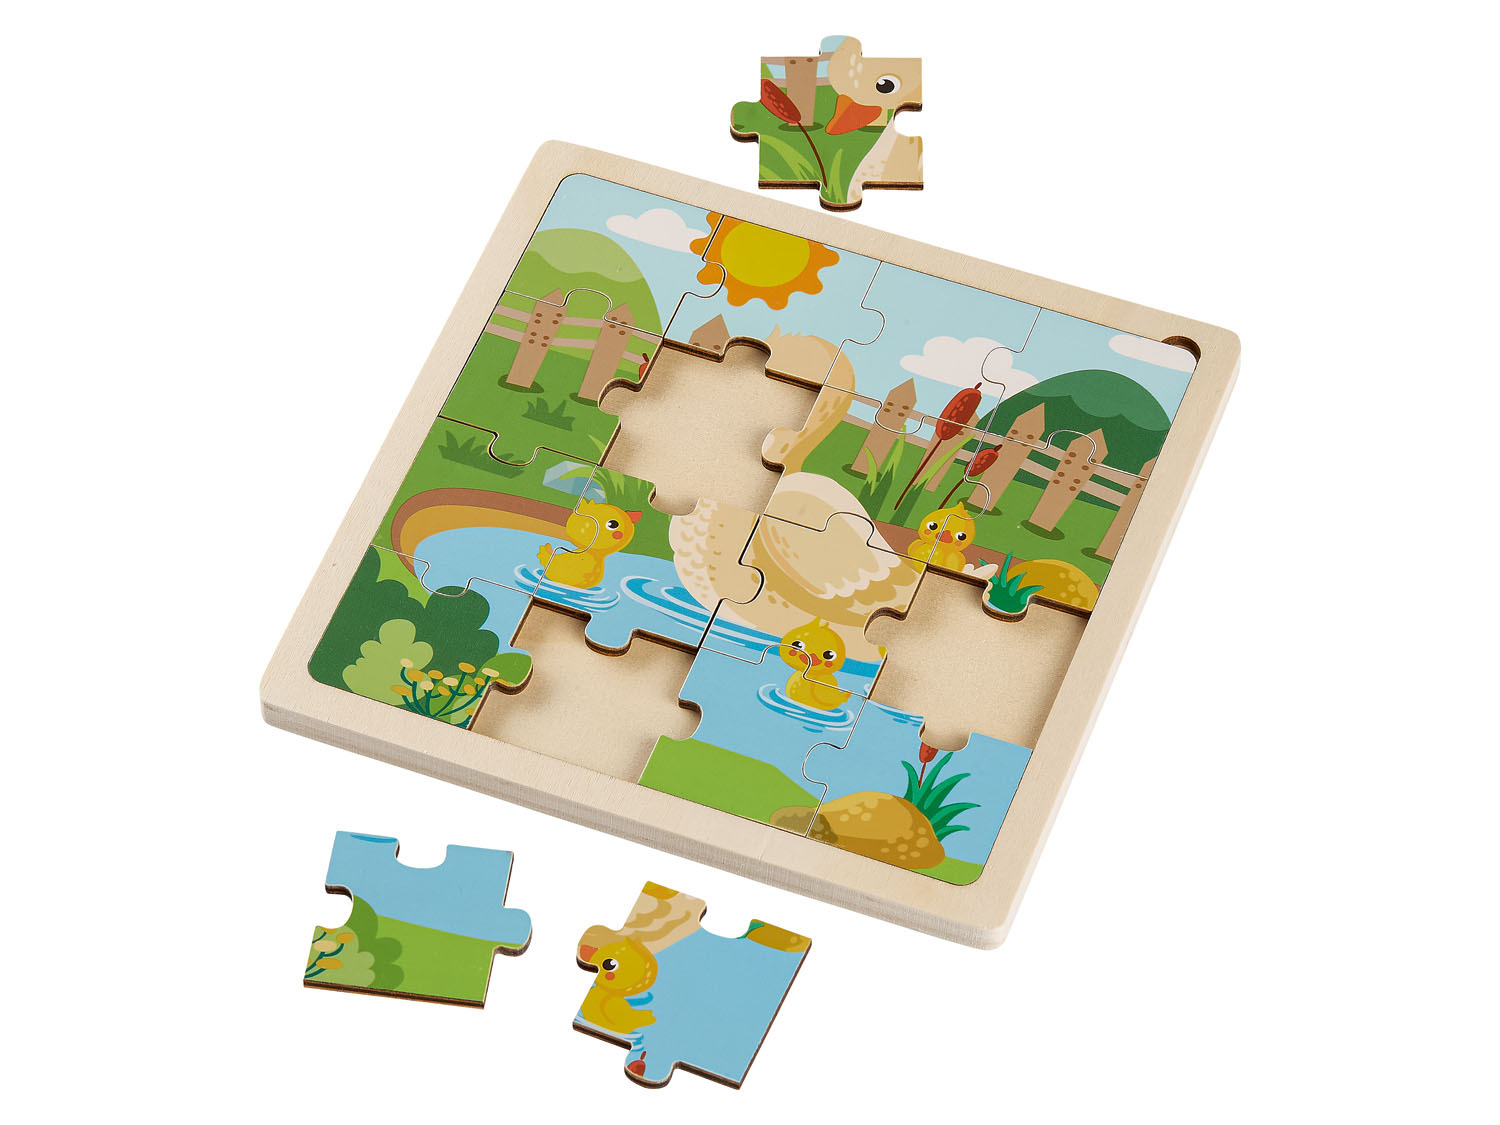 achterstalligheid zijn beroerte Playtive Houten puzzel online kopen op Lidl.be